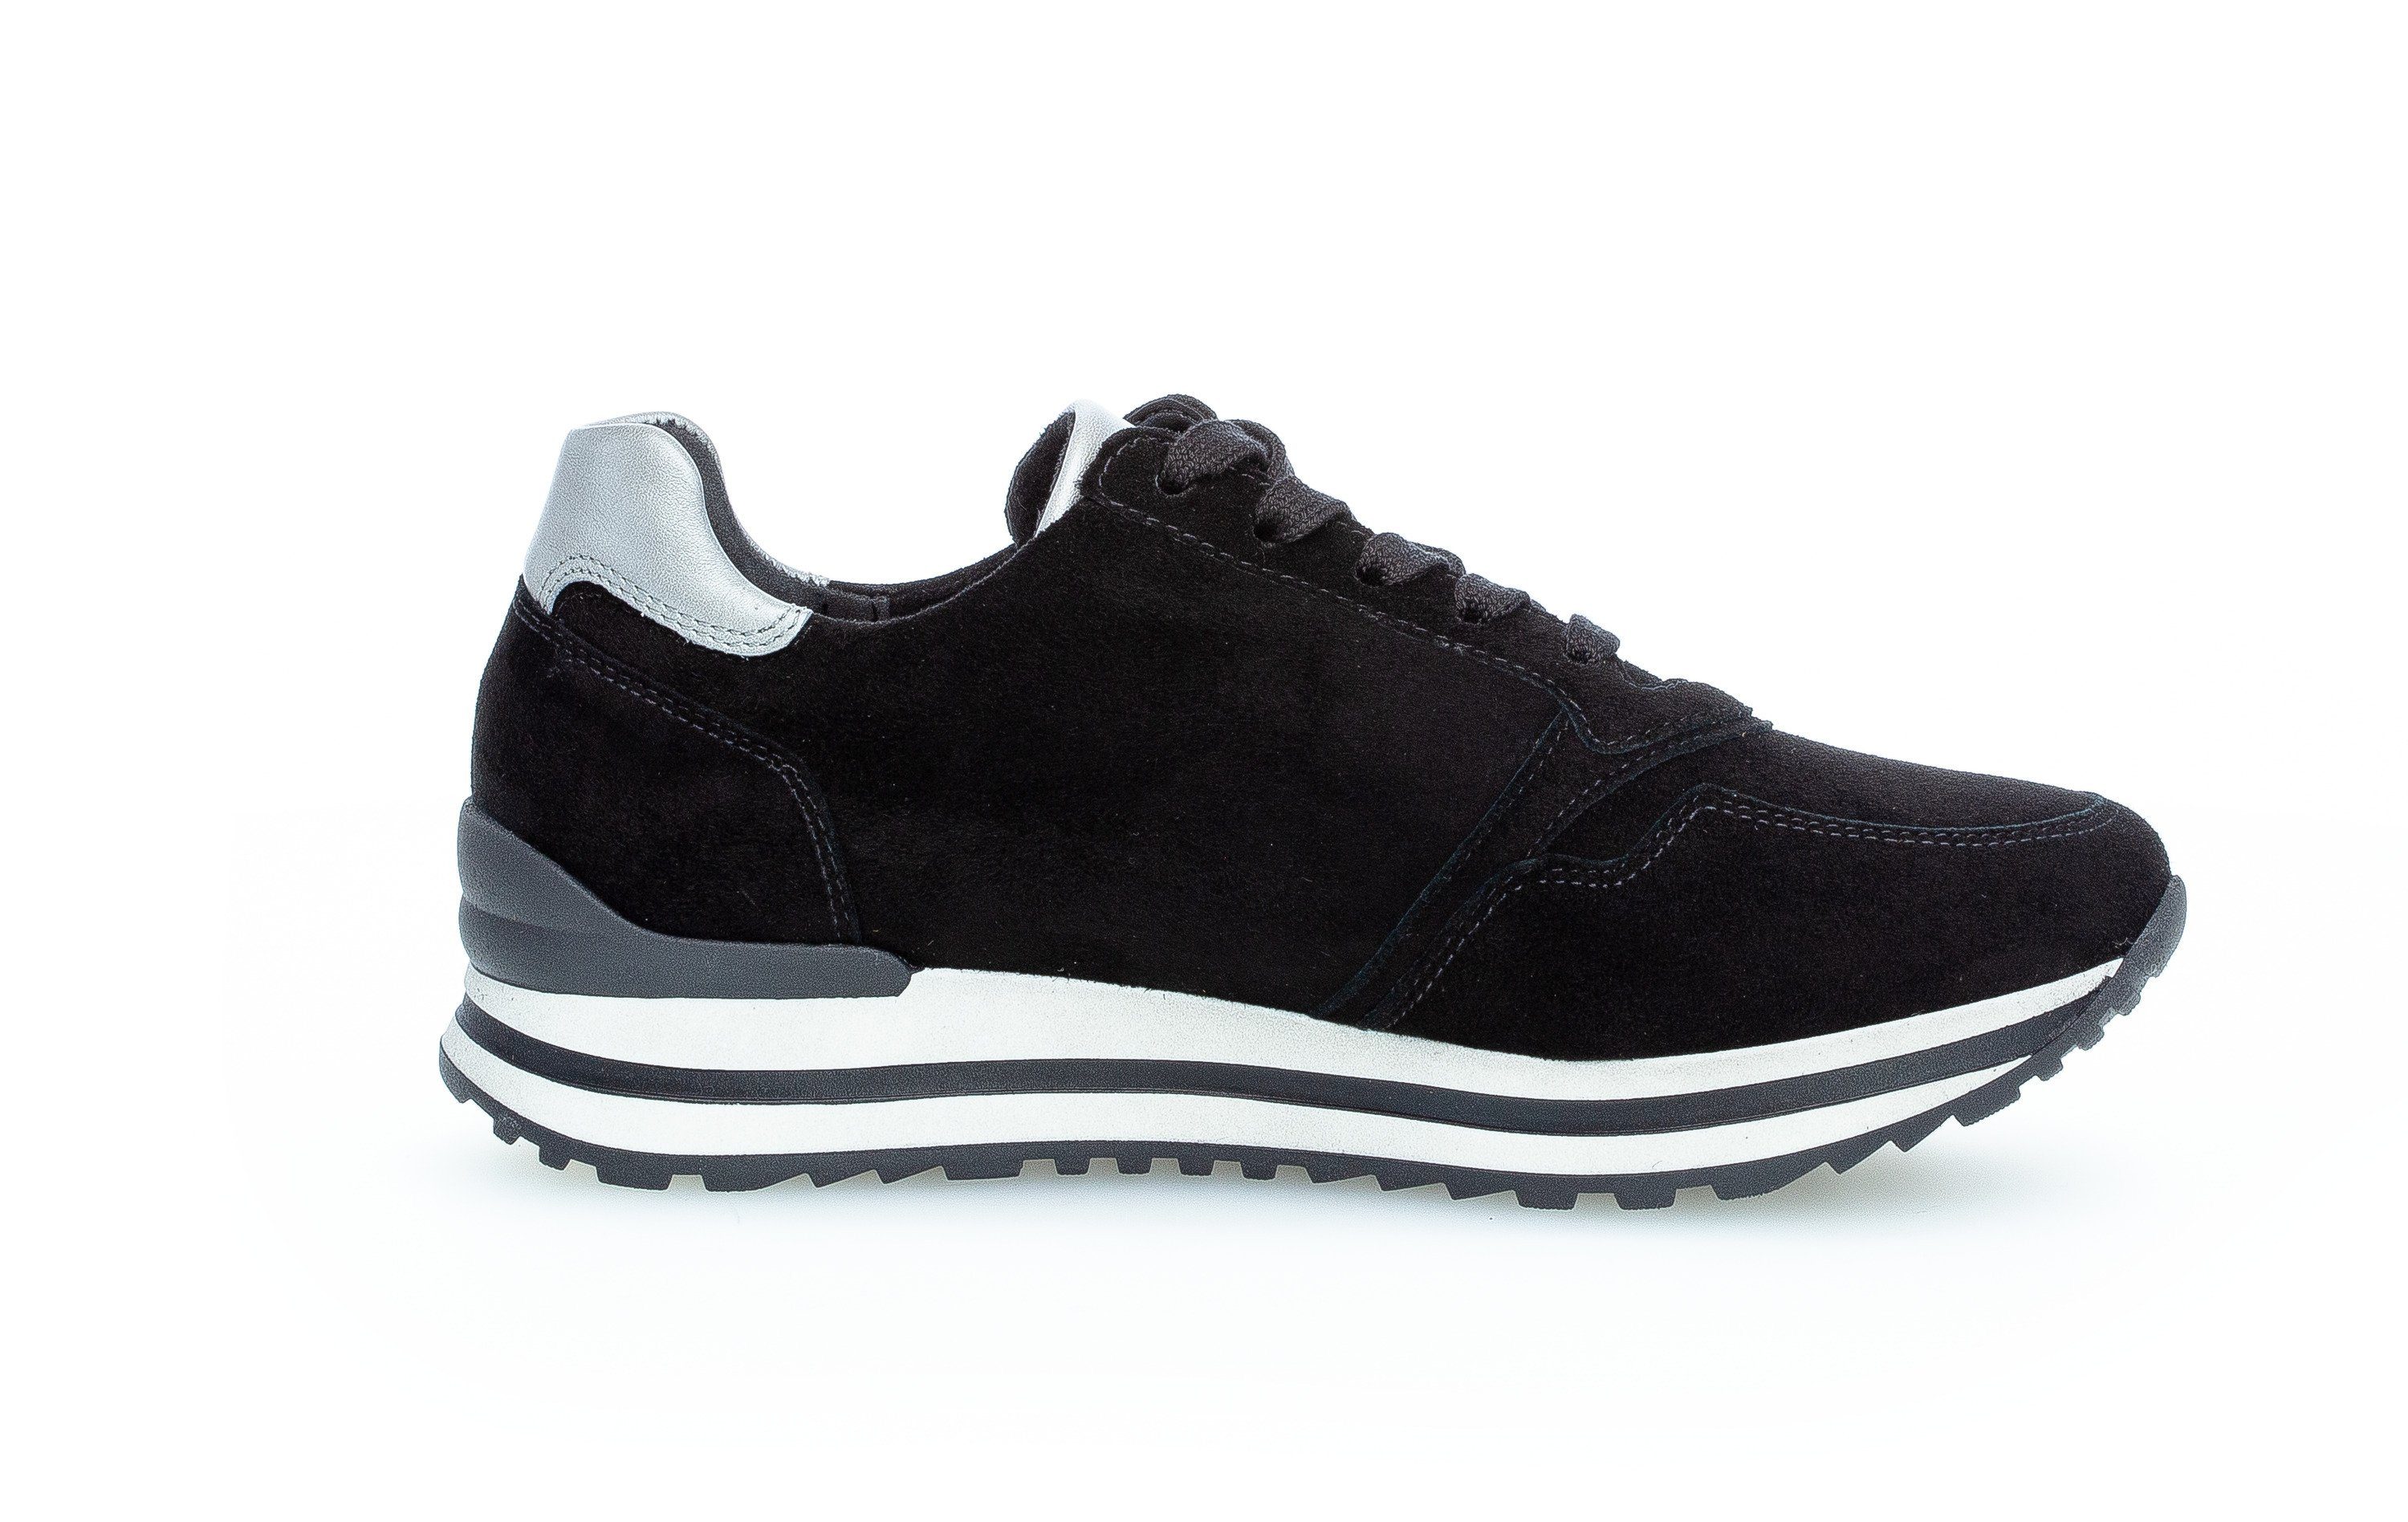 Gabor Comfort Sneaker schwarz-bunt-kombiniert-schwarz-bunt-kombiniert